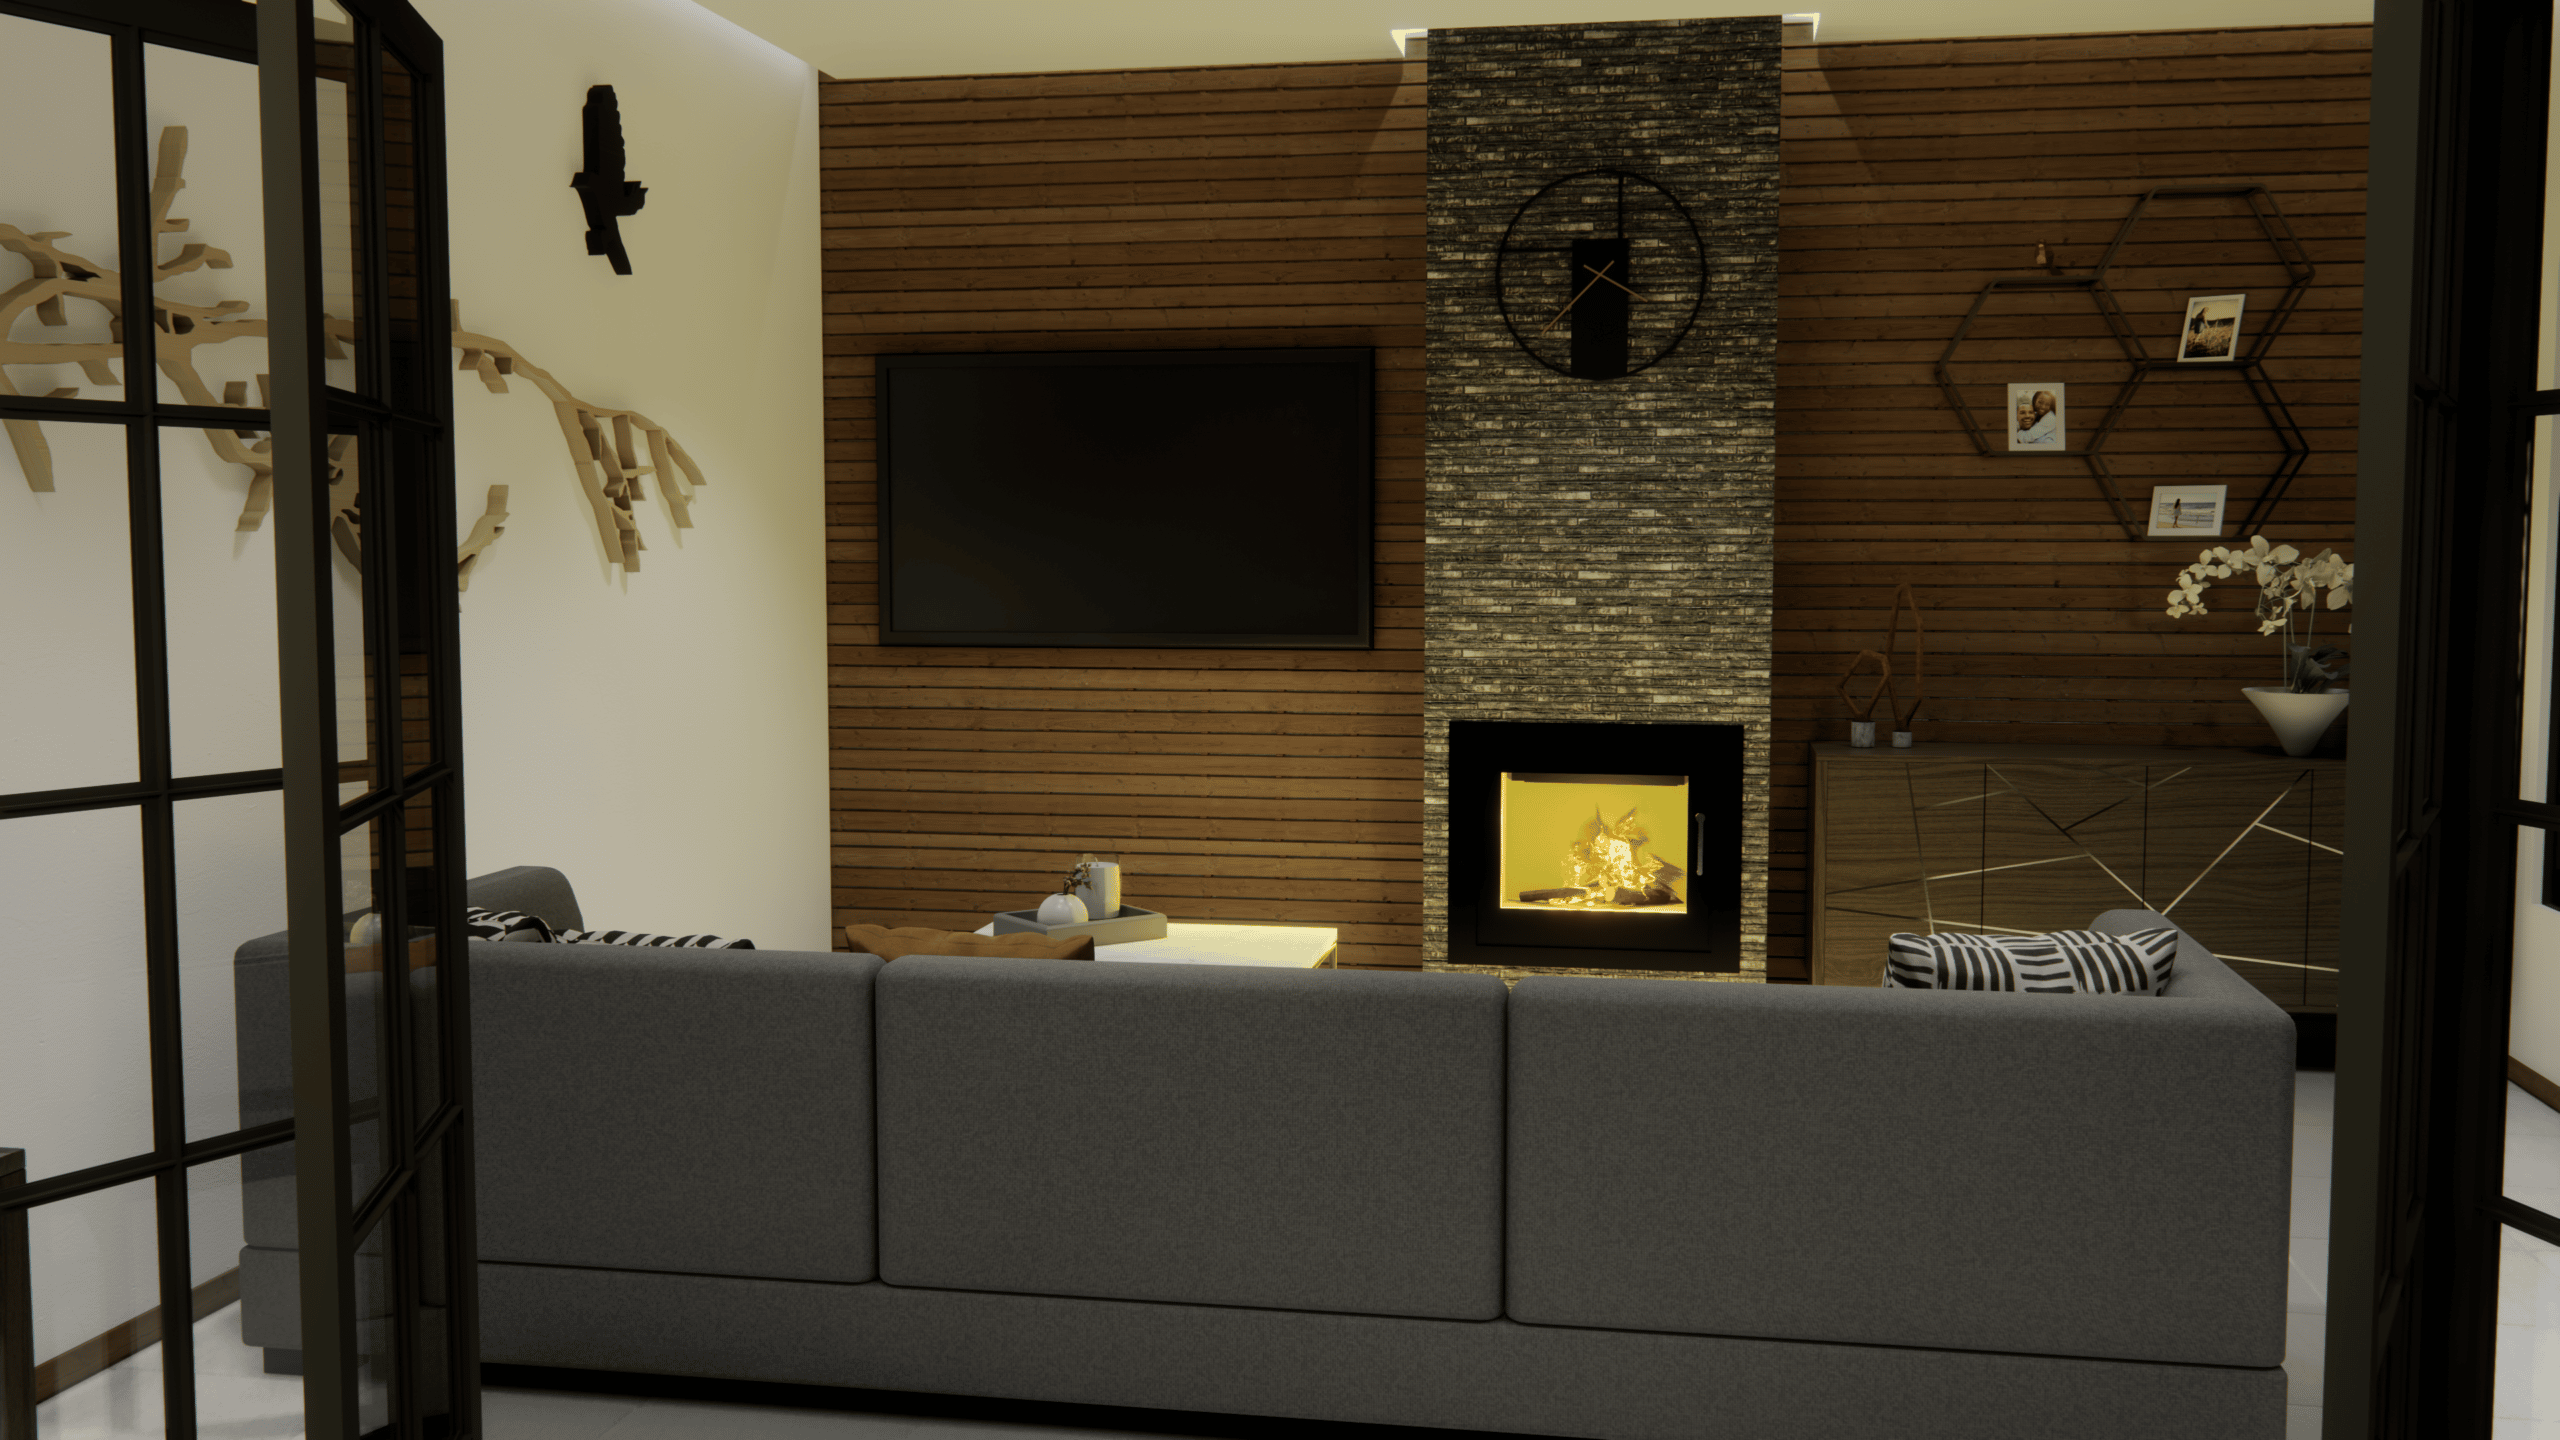 Een 3D-render of visualisatie van je woonkamer om een vlotte verkoop van je huis of appartement te bewerkstelligen.